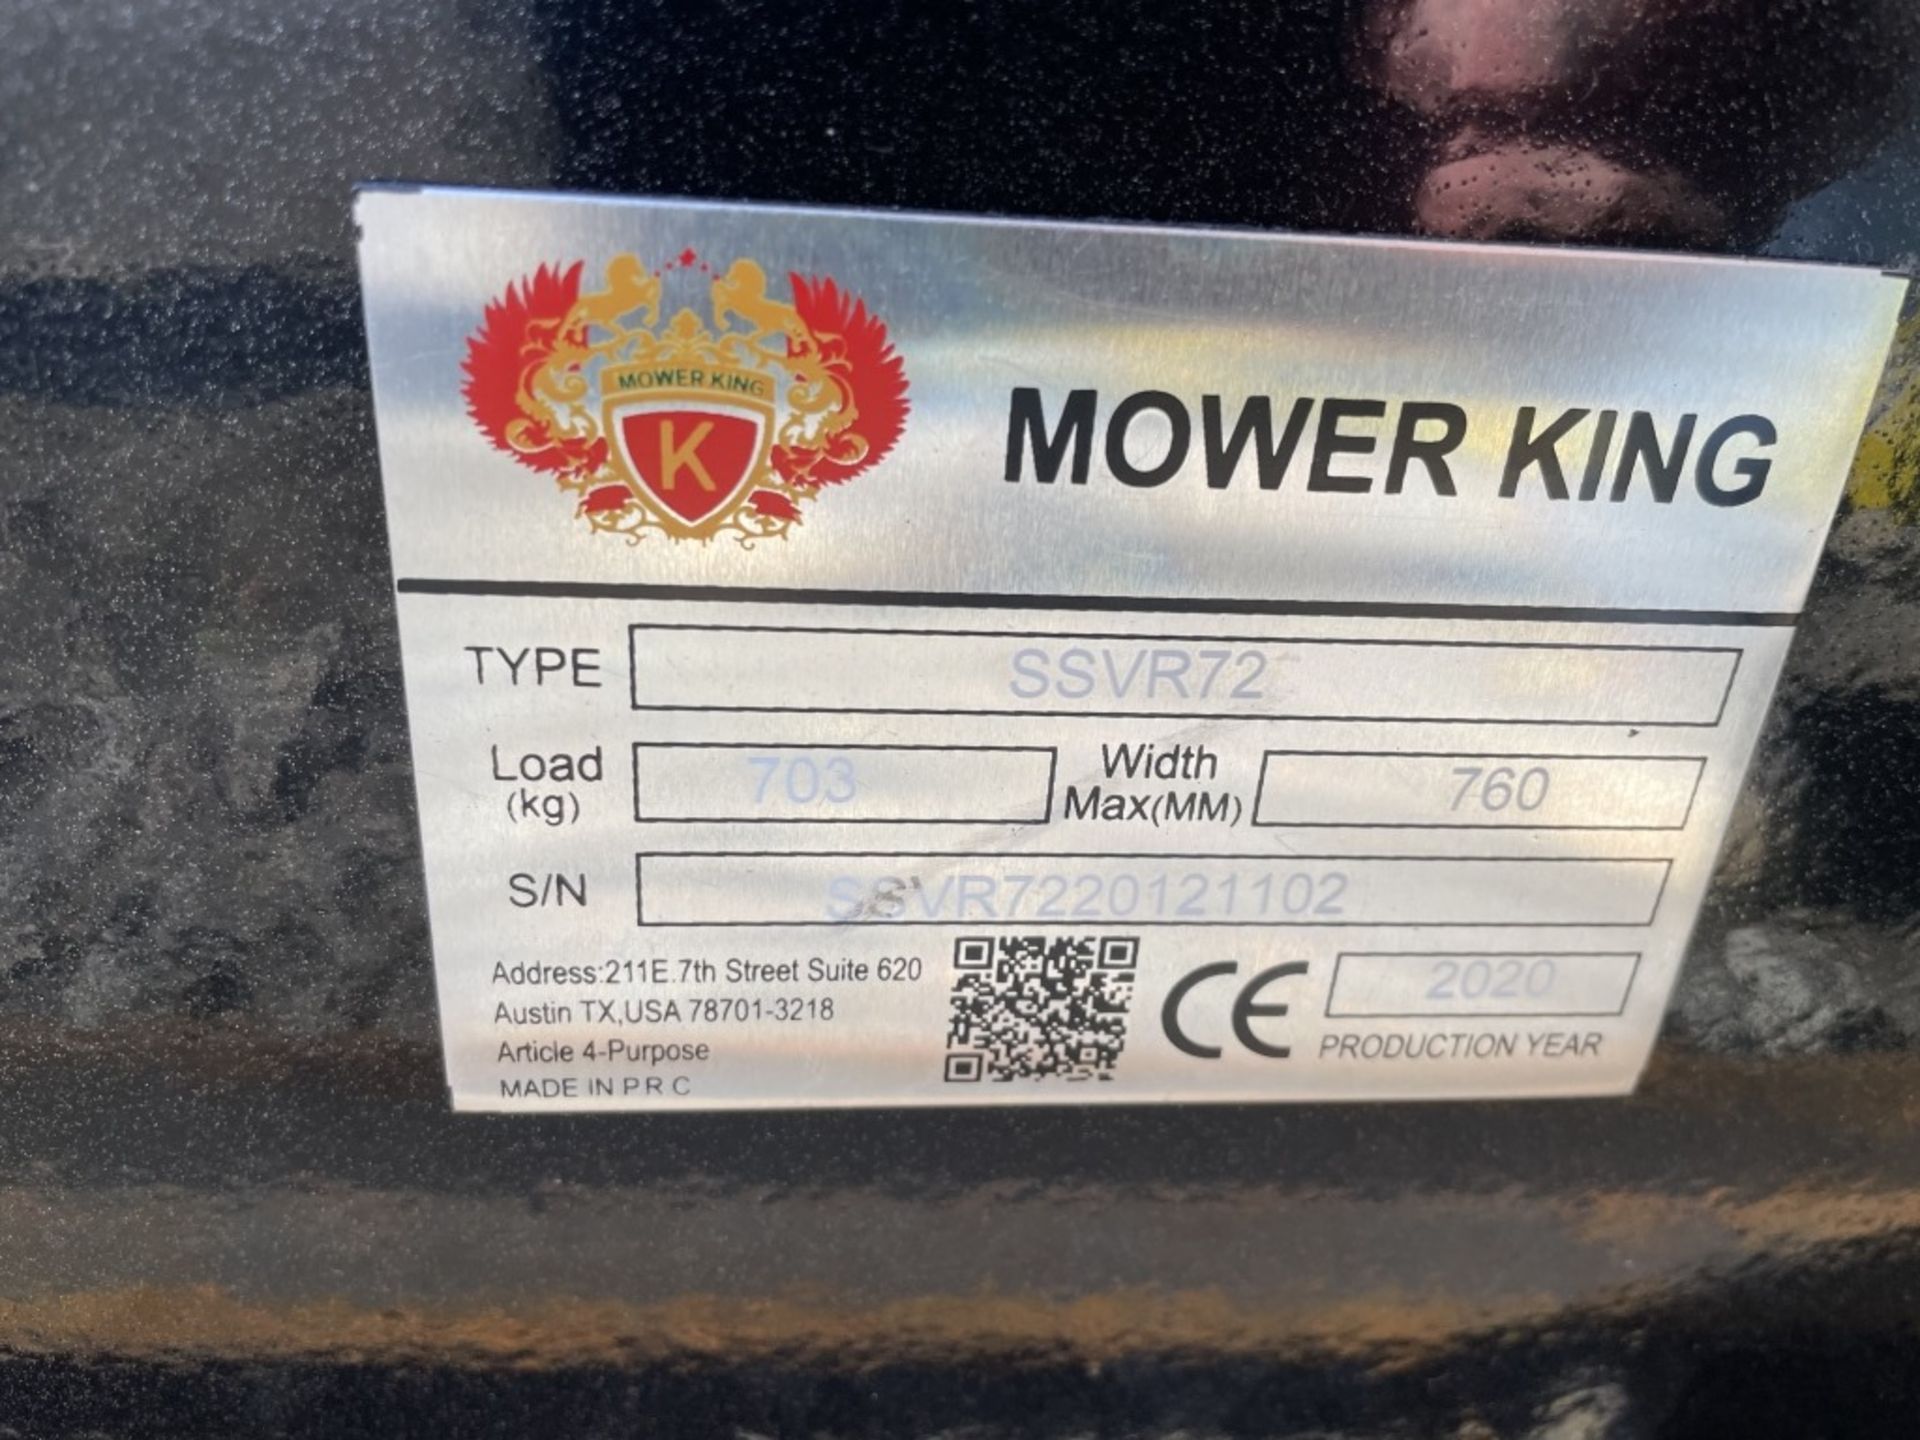 2020 Mower King SSVR72 Vibratory Roller - Image 5 of 5